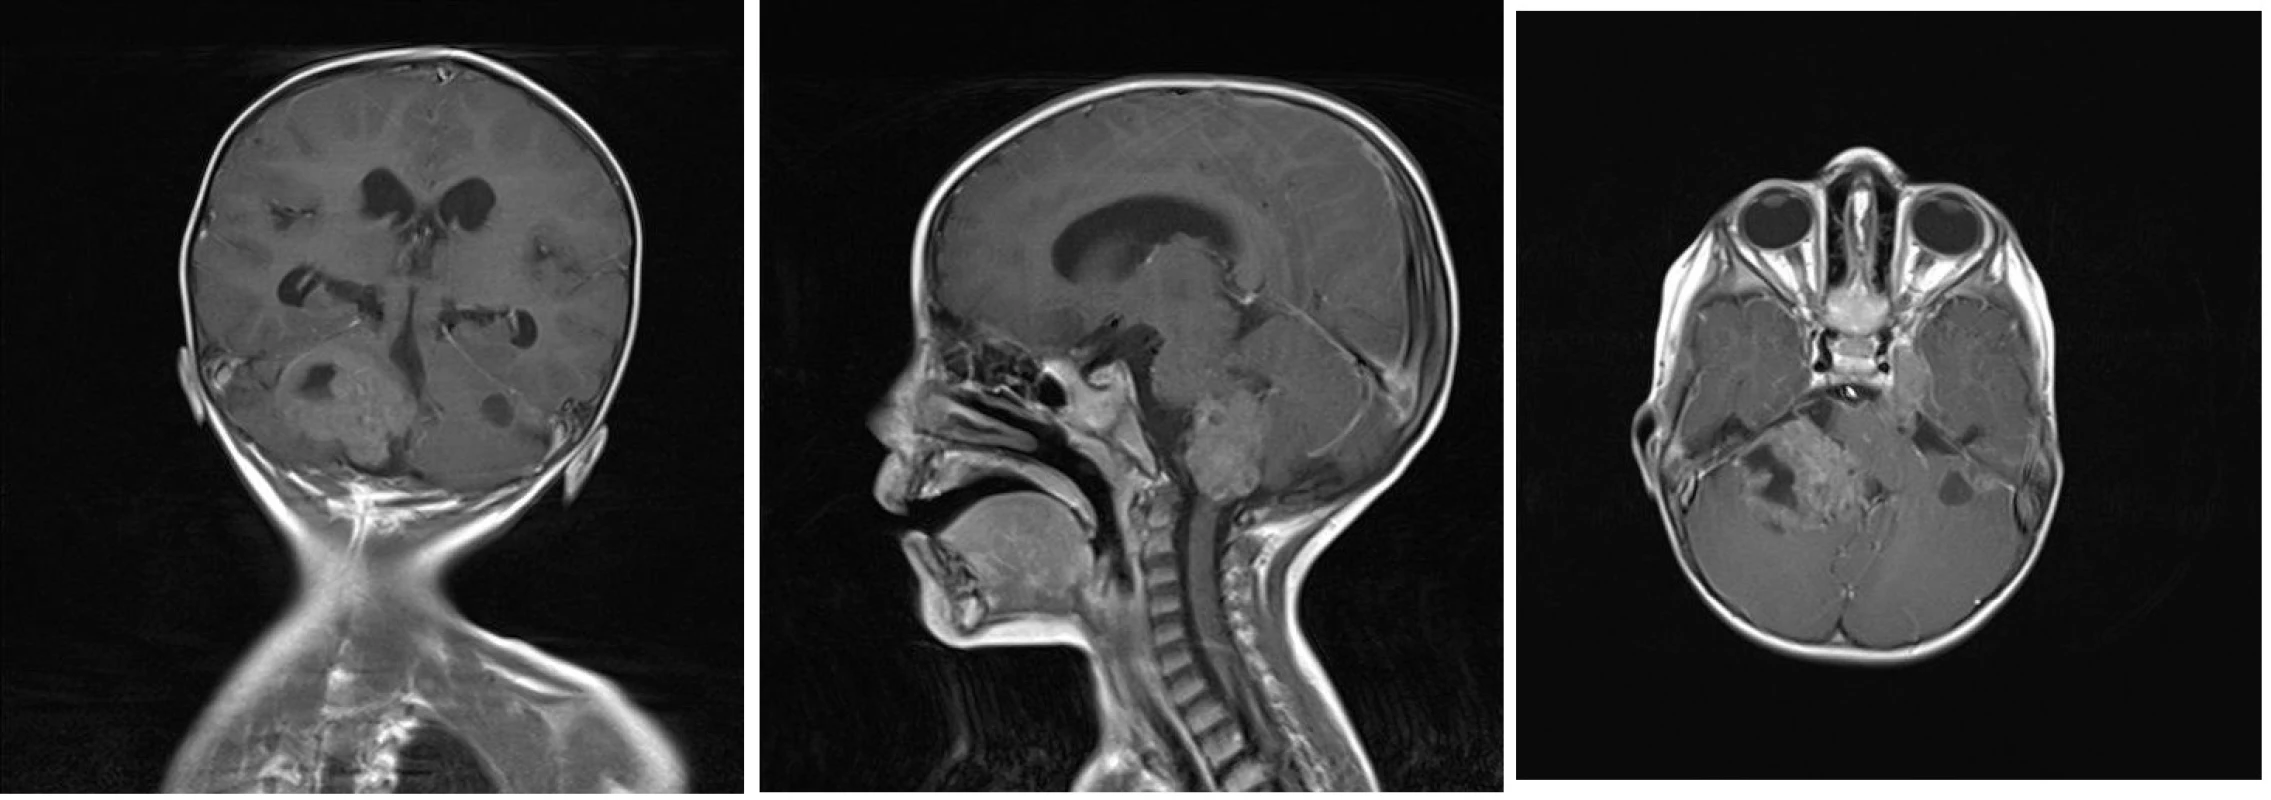 A, B, C Magnetická rezonance - koronární, sagitální a axiální T1 vážené postkontrastní obrazy ukazující  nehomogenně sytící se ložisko v zadní jámě lební vpravo, které zasahuje do foramen magnum, infiltruje pravou cerebelární hemisféru a mozkový kmen. Dále jsou na axiálním zobrazení patrné menší útvary - metastázy podobného vzhledu v zadní jámě lební vlevo, v oblasti Gasserského ganglia vlevo a v pravém hippokampu.
Image 3 A, B, C: Magnetic resonance – coronary, sagittal and axial T1-weighted images showing heterogenously enhancing tumor of posterior skull fossa reaching foramen magnum and infiltrating right cerebellar hemisphere and brain stem. Furthermore, other foci of metastasis in left posterior skull fossa, in ganglion Gasseri region and in right hippocampus are visible.